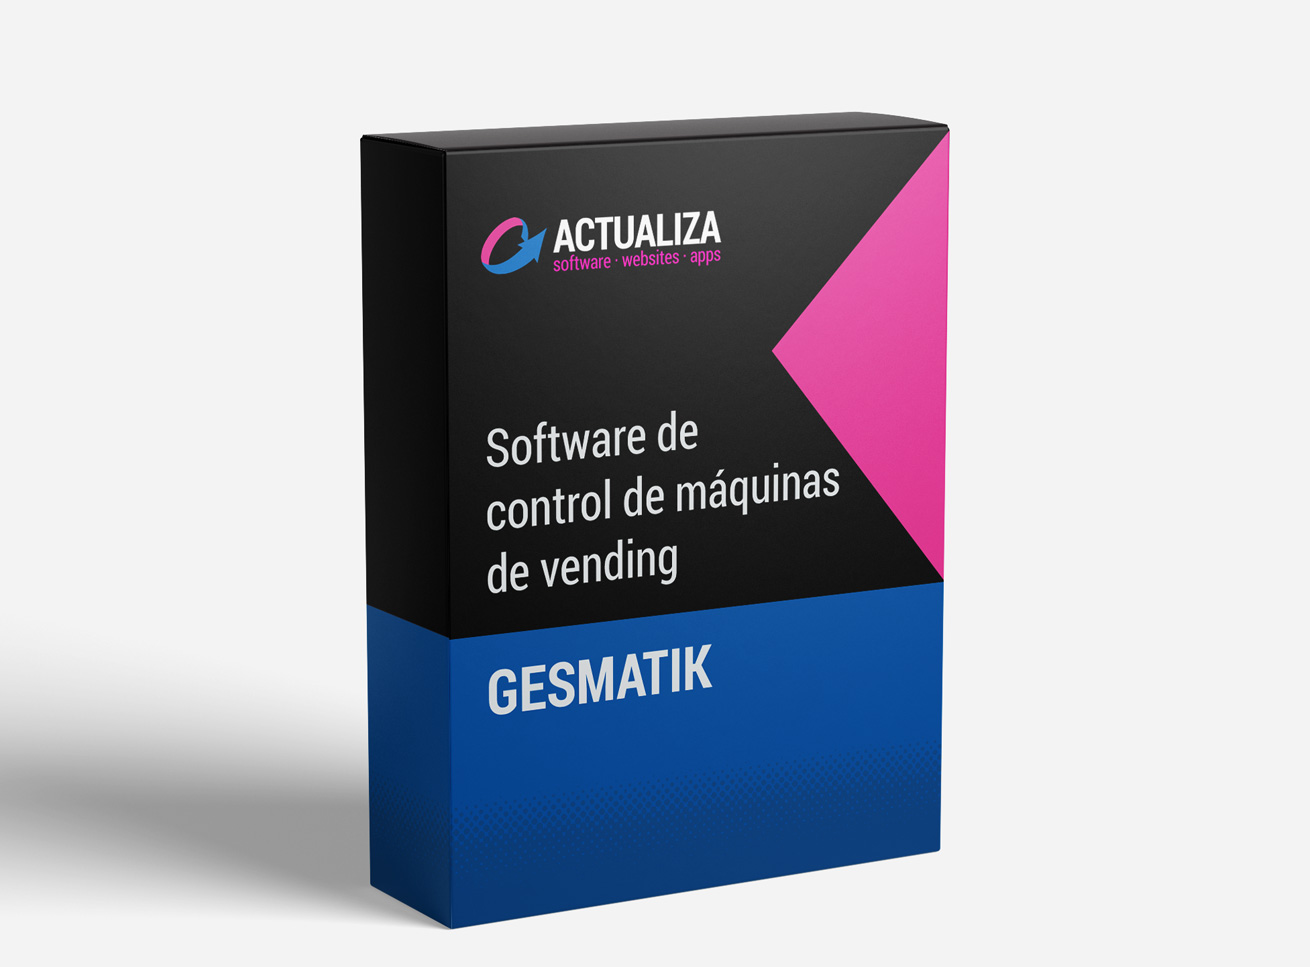 Gesmatik software de gestión de máquinas de vending